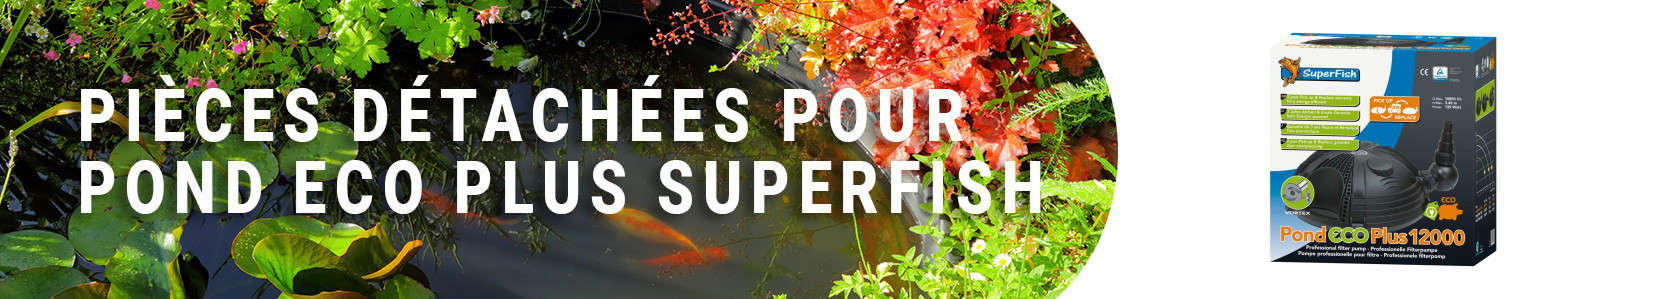 Pièces détachées pour Pond Eco Plus Superfish